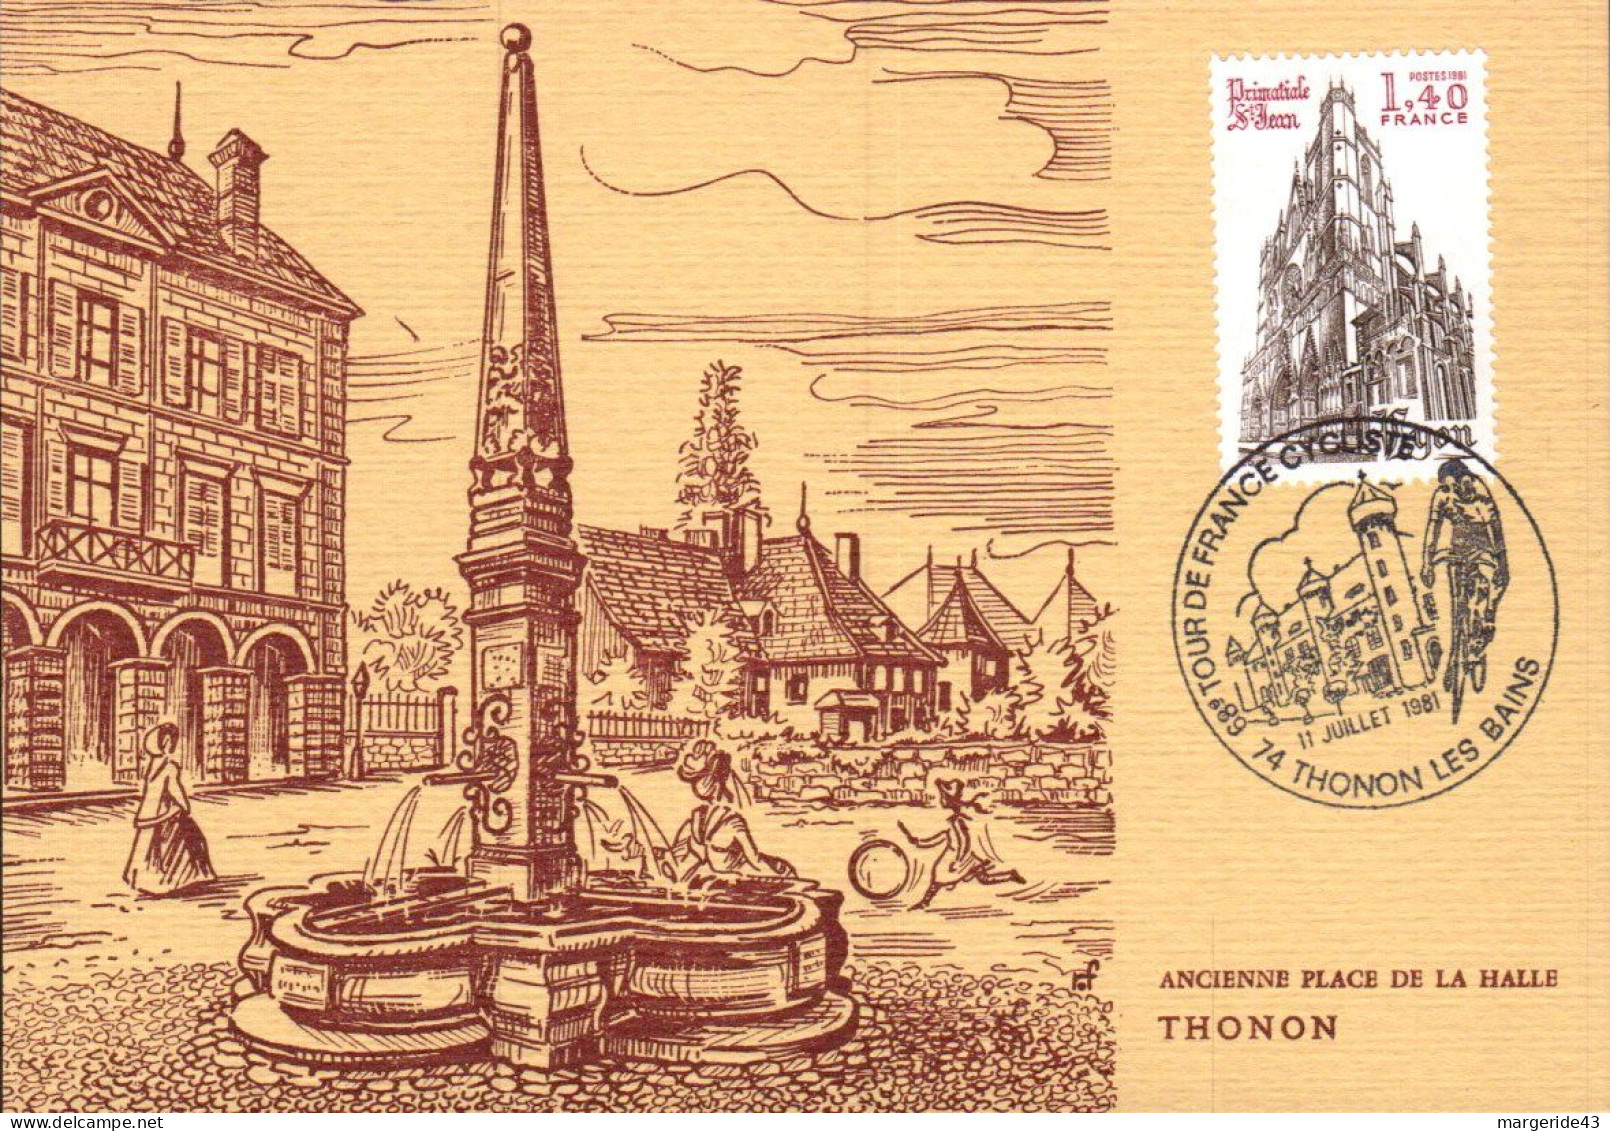 CYCLISME LE TOUR DE FRANCE 1981 -THONON LES BAINS - Commemorative Postmarks